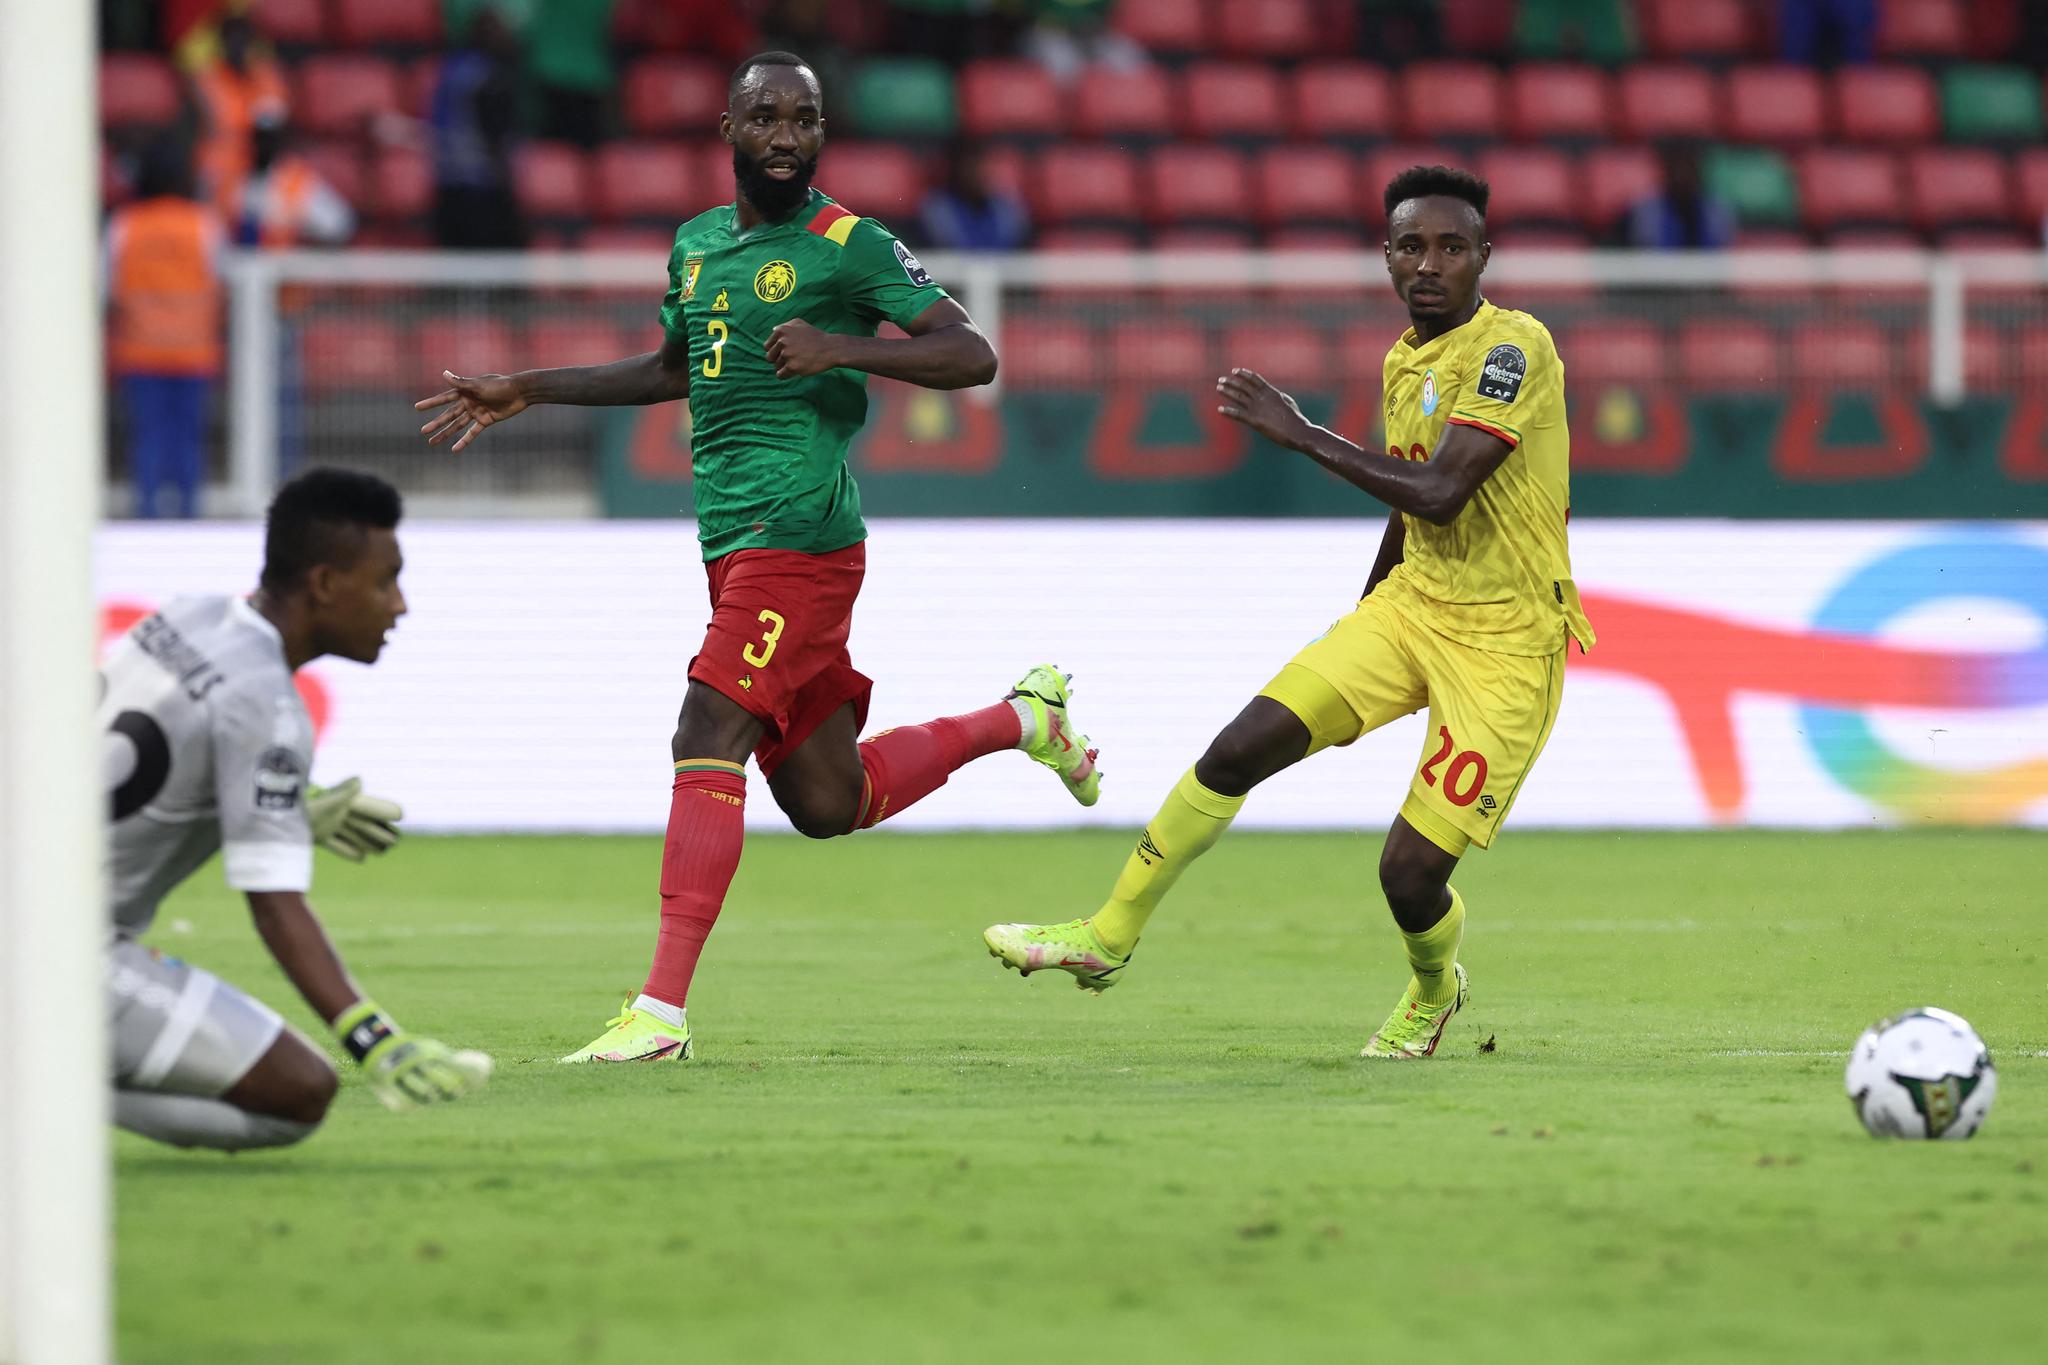 Football - Le Cameroun de Ngamaleu premier qualifié pour les 8es | 24 heures